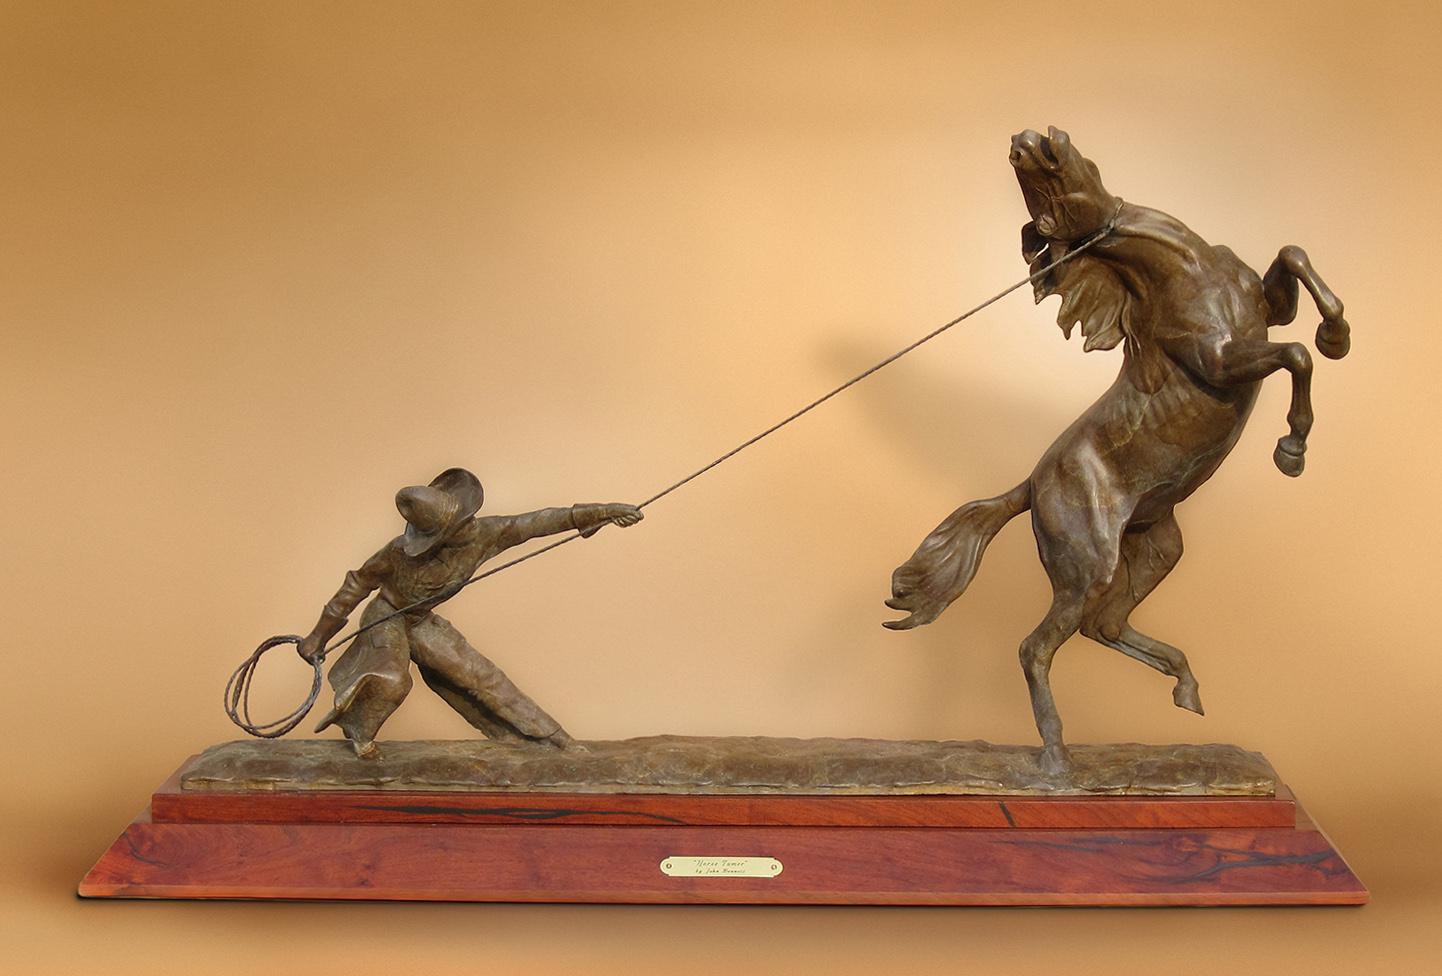 John Bennett Figurative Sculpture - "HORSE TAMER" BRONZE SCULPTURE